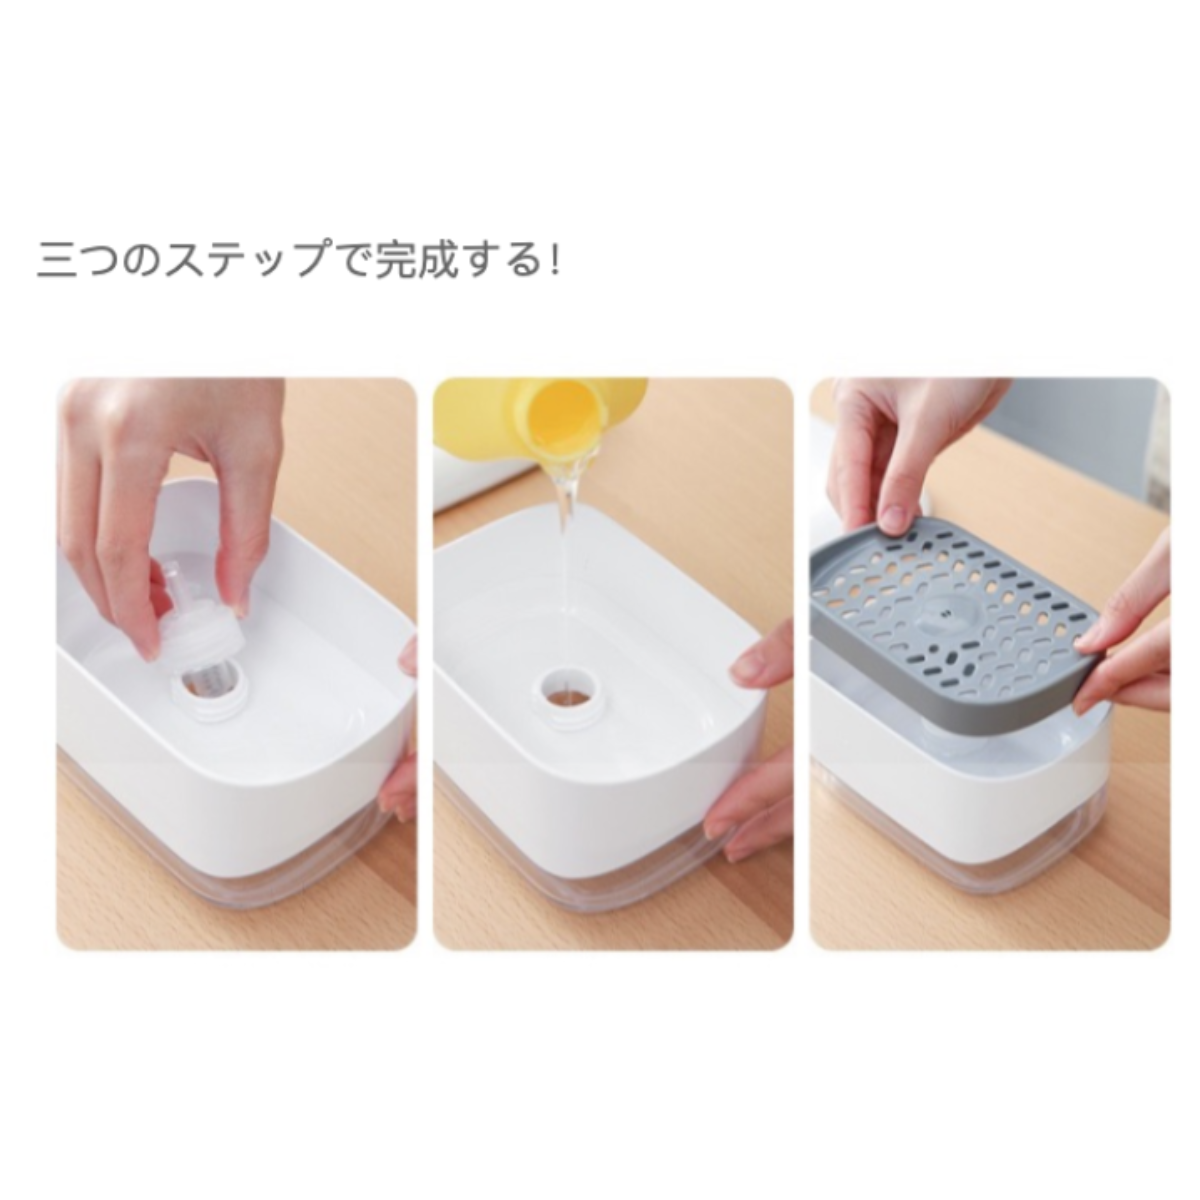 プッシュ式洗剤ケース | 簡単に片手で使え、何回押しても順調に洗剤出す|undefined